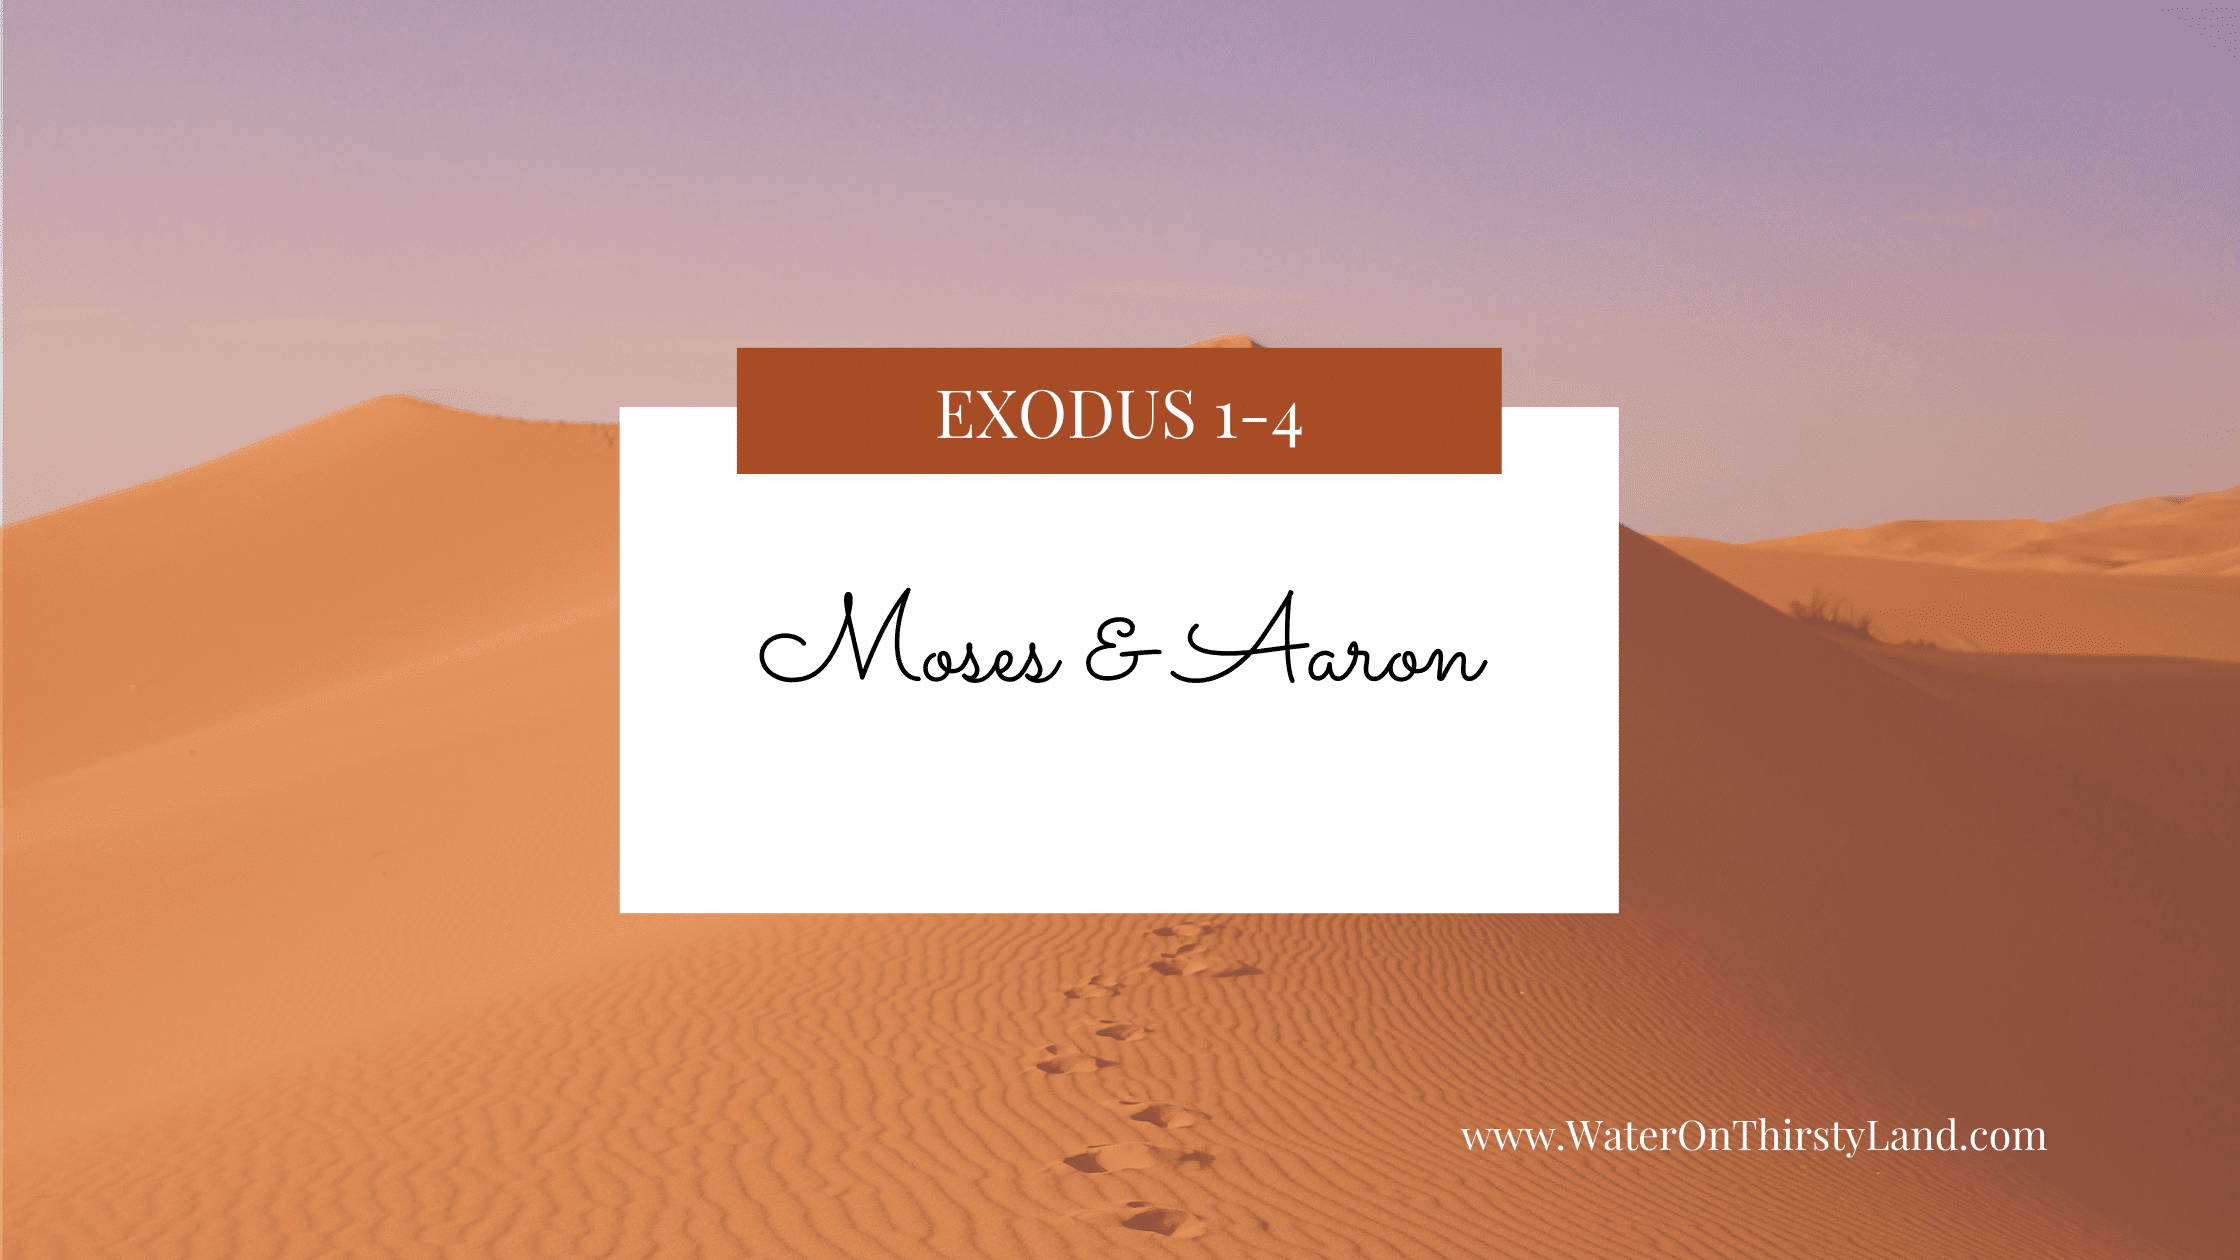 Exodus 1-4: Moses & Aaron